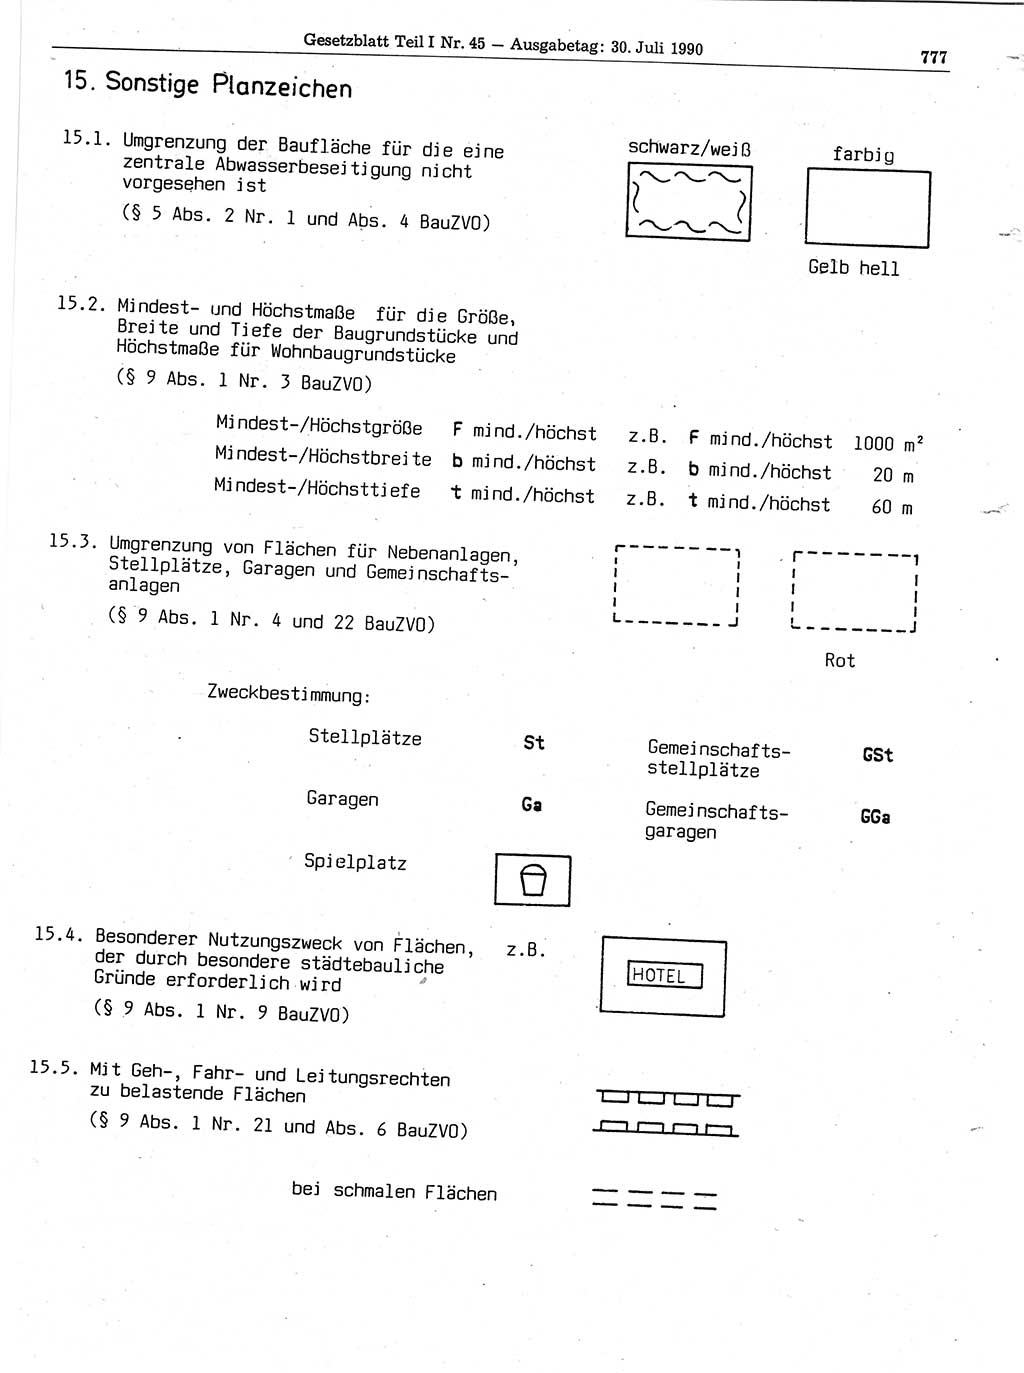 Gesetzblatt (GBl.) der Deutschen Demokratischen Republik (DDR) Teil Ⅰ 1990, Seite 777 (GBl. DDR Ⅰ 1990, S. 777)